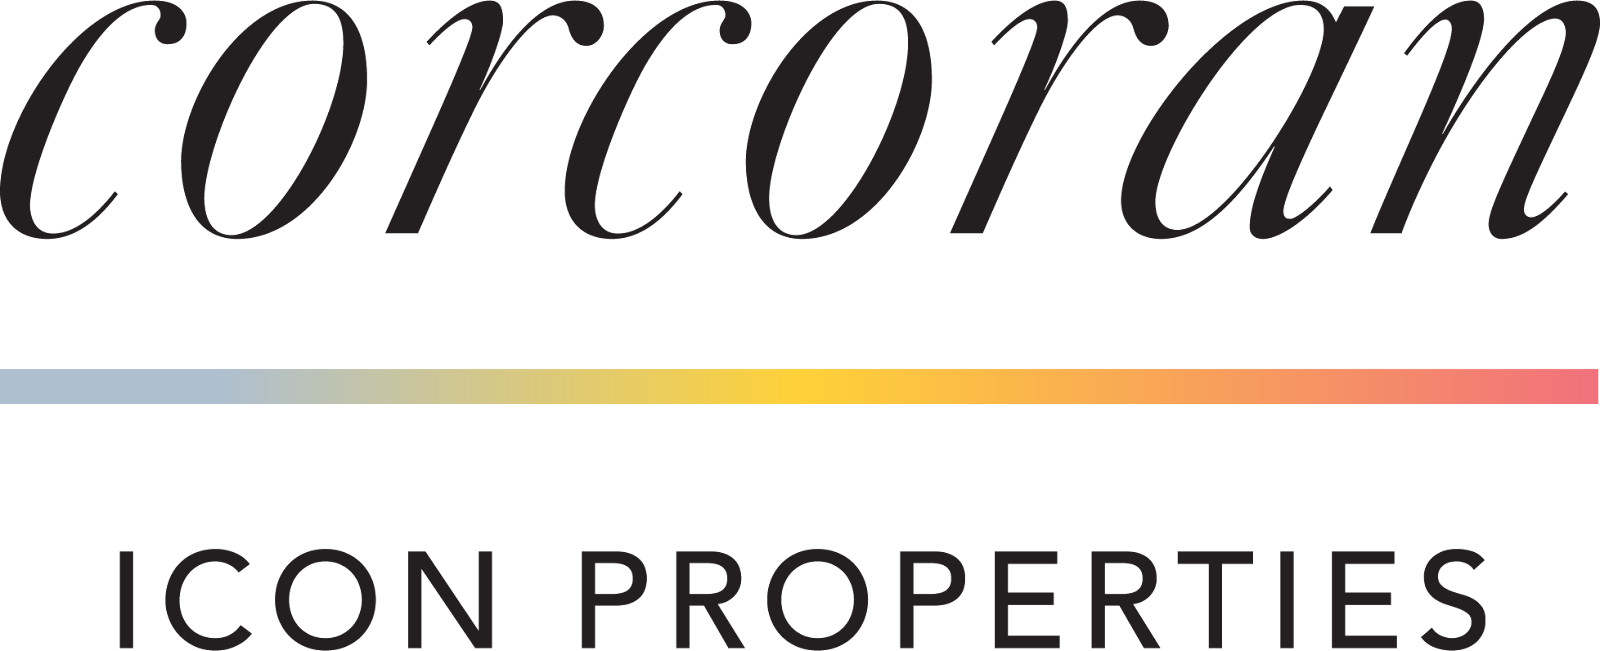 Corcoran Properties